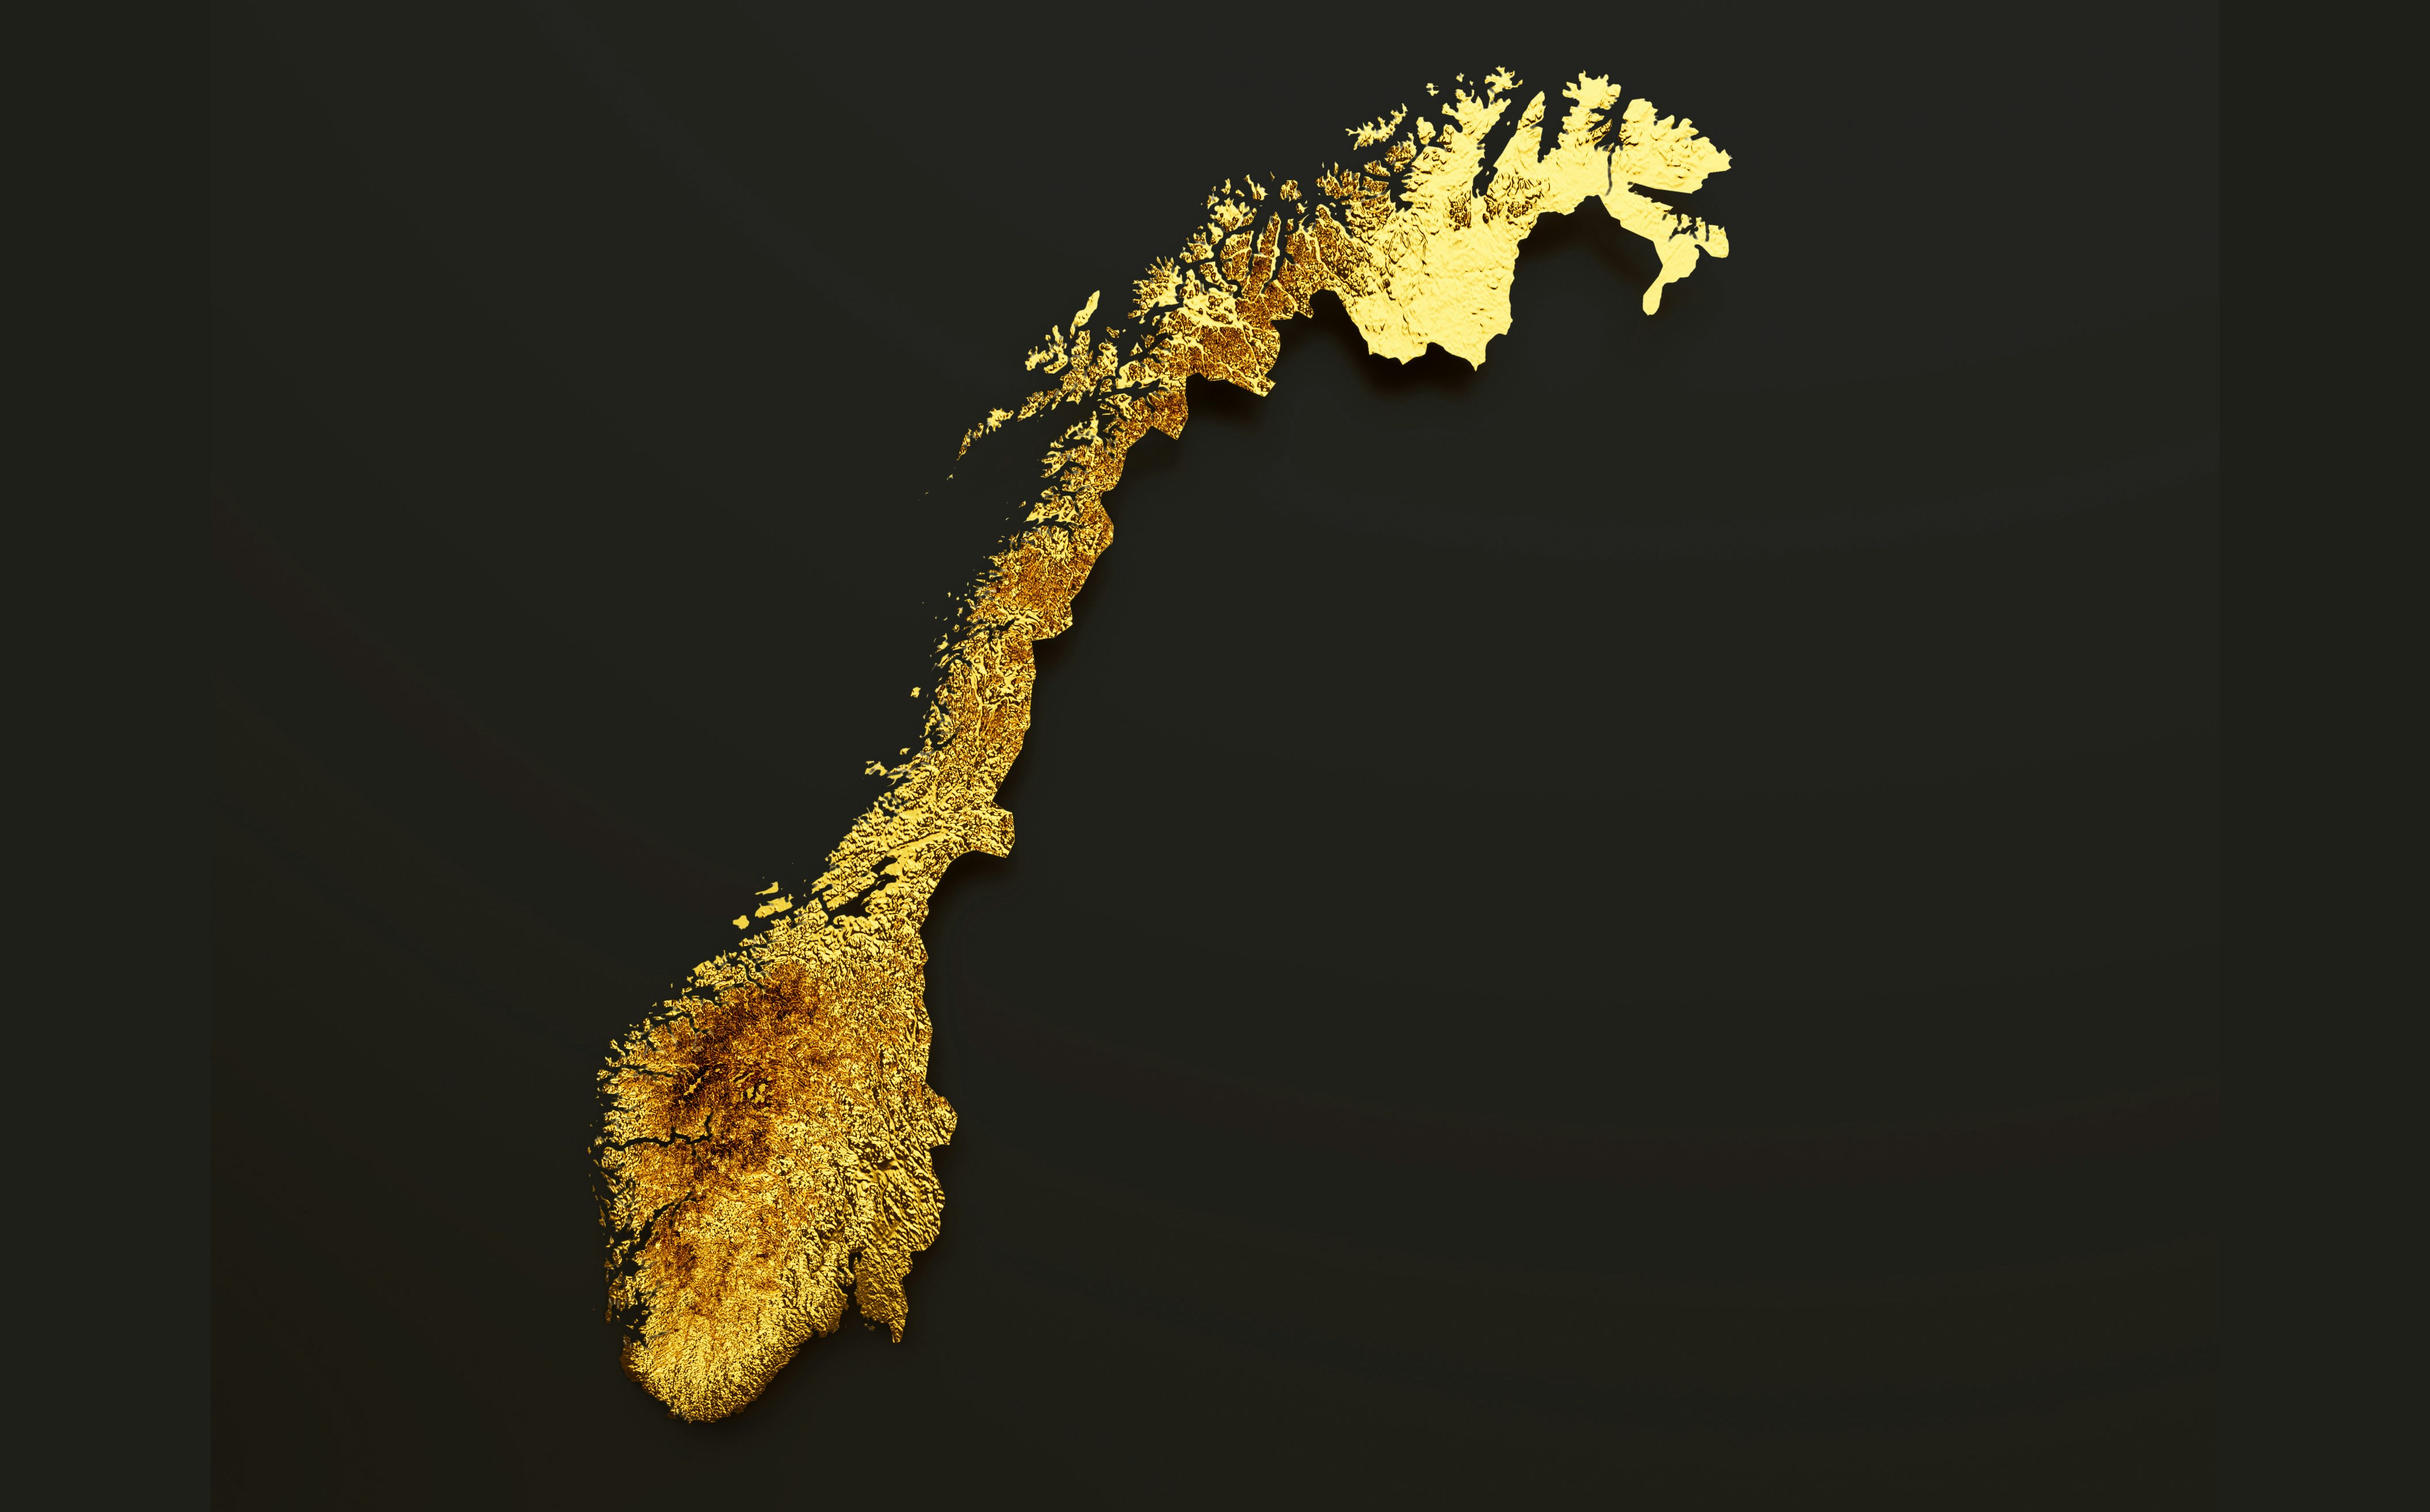 kart av Norge i gull mot svart bakgrunn